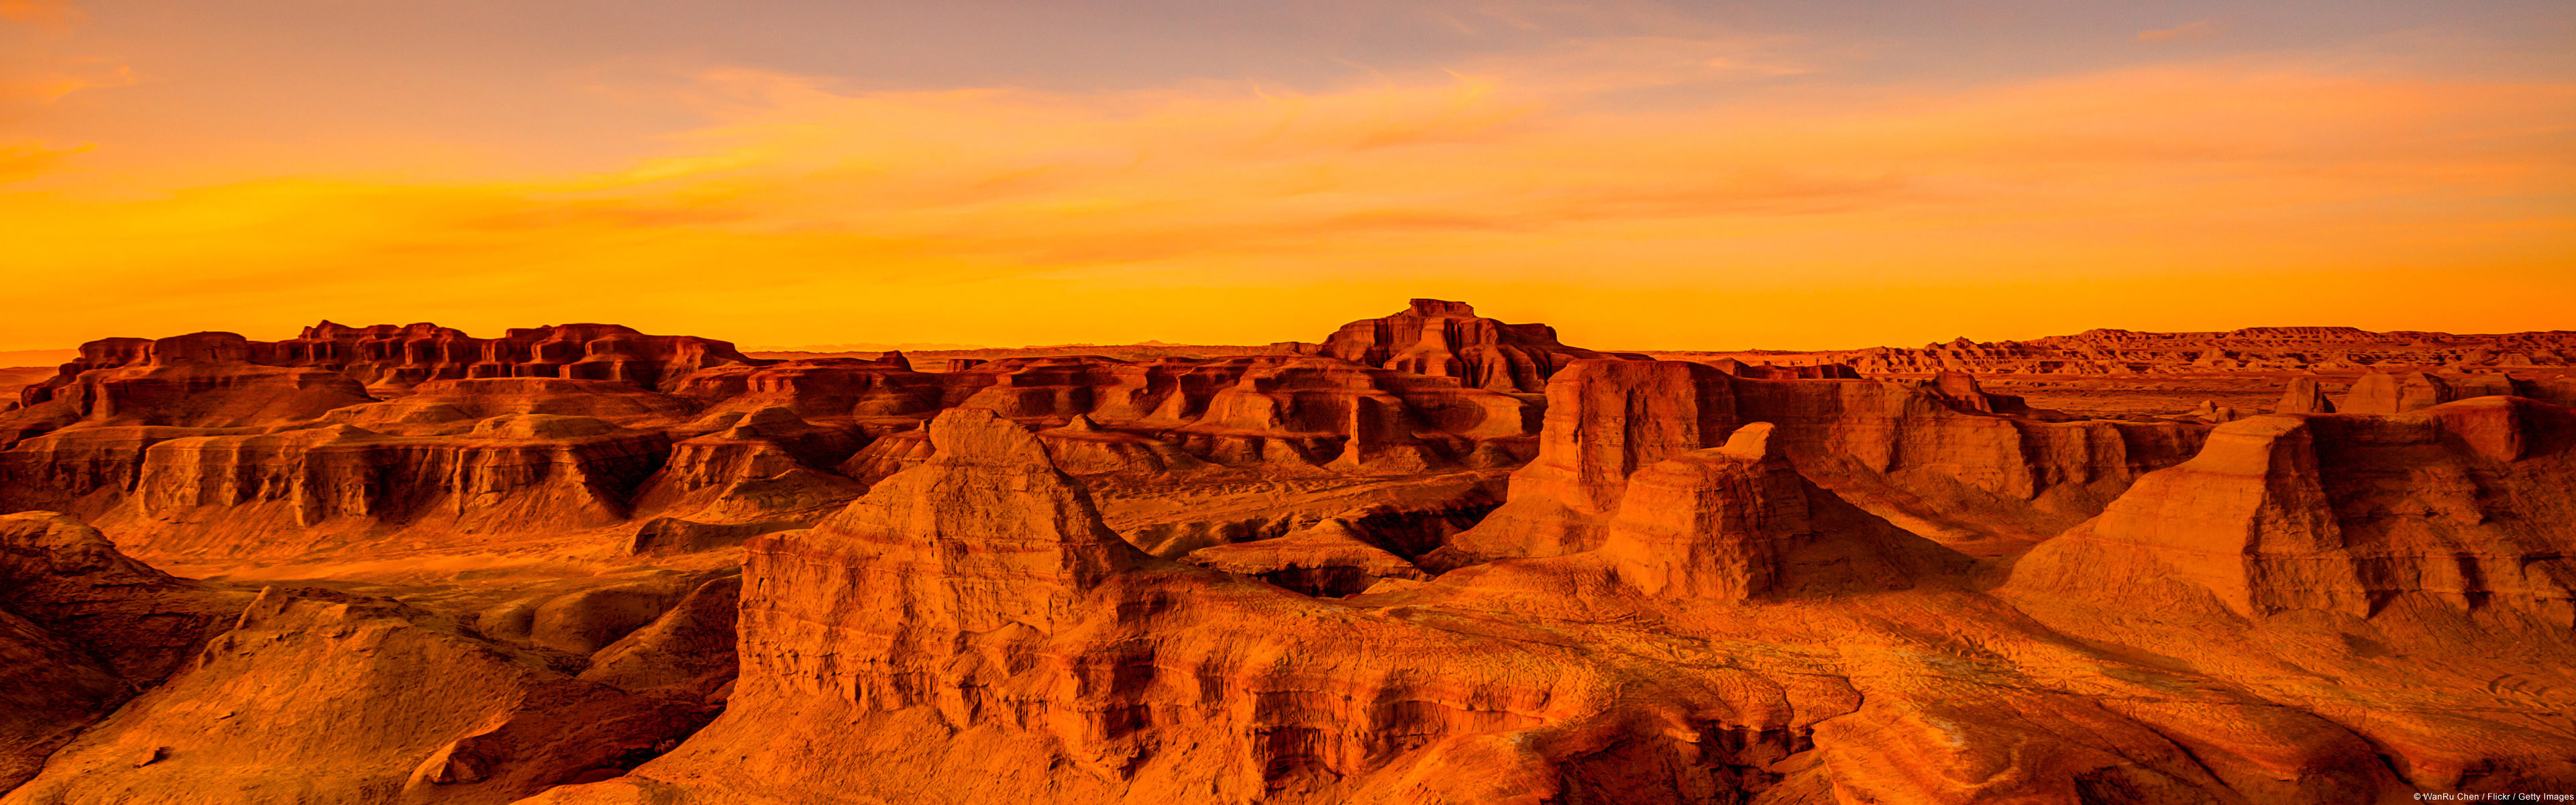 Gobi Desert, Sunset silhouette, HD wallpaper, Captivating beauty, 3840x1200 Dual Screen Desktop